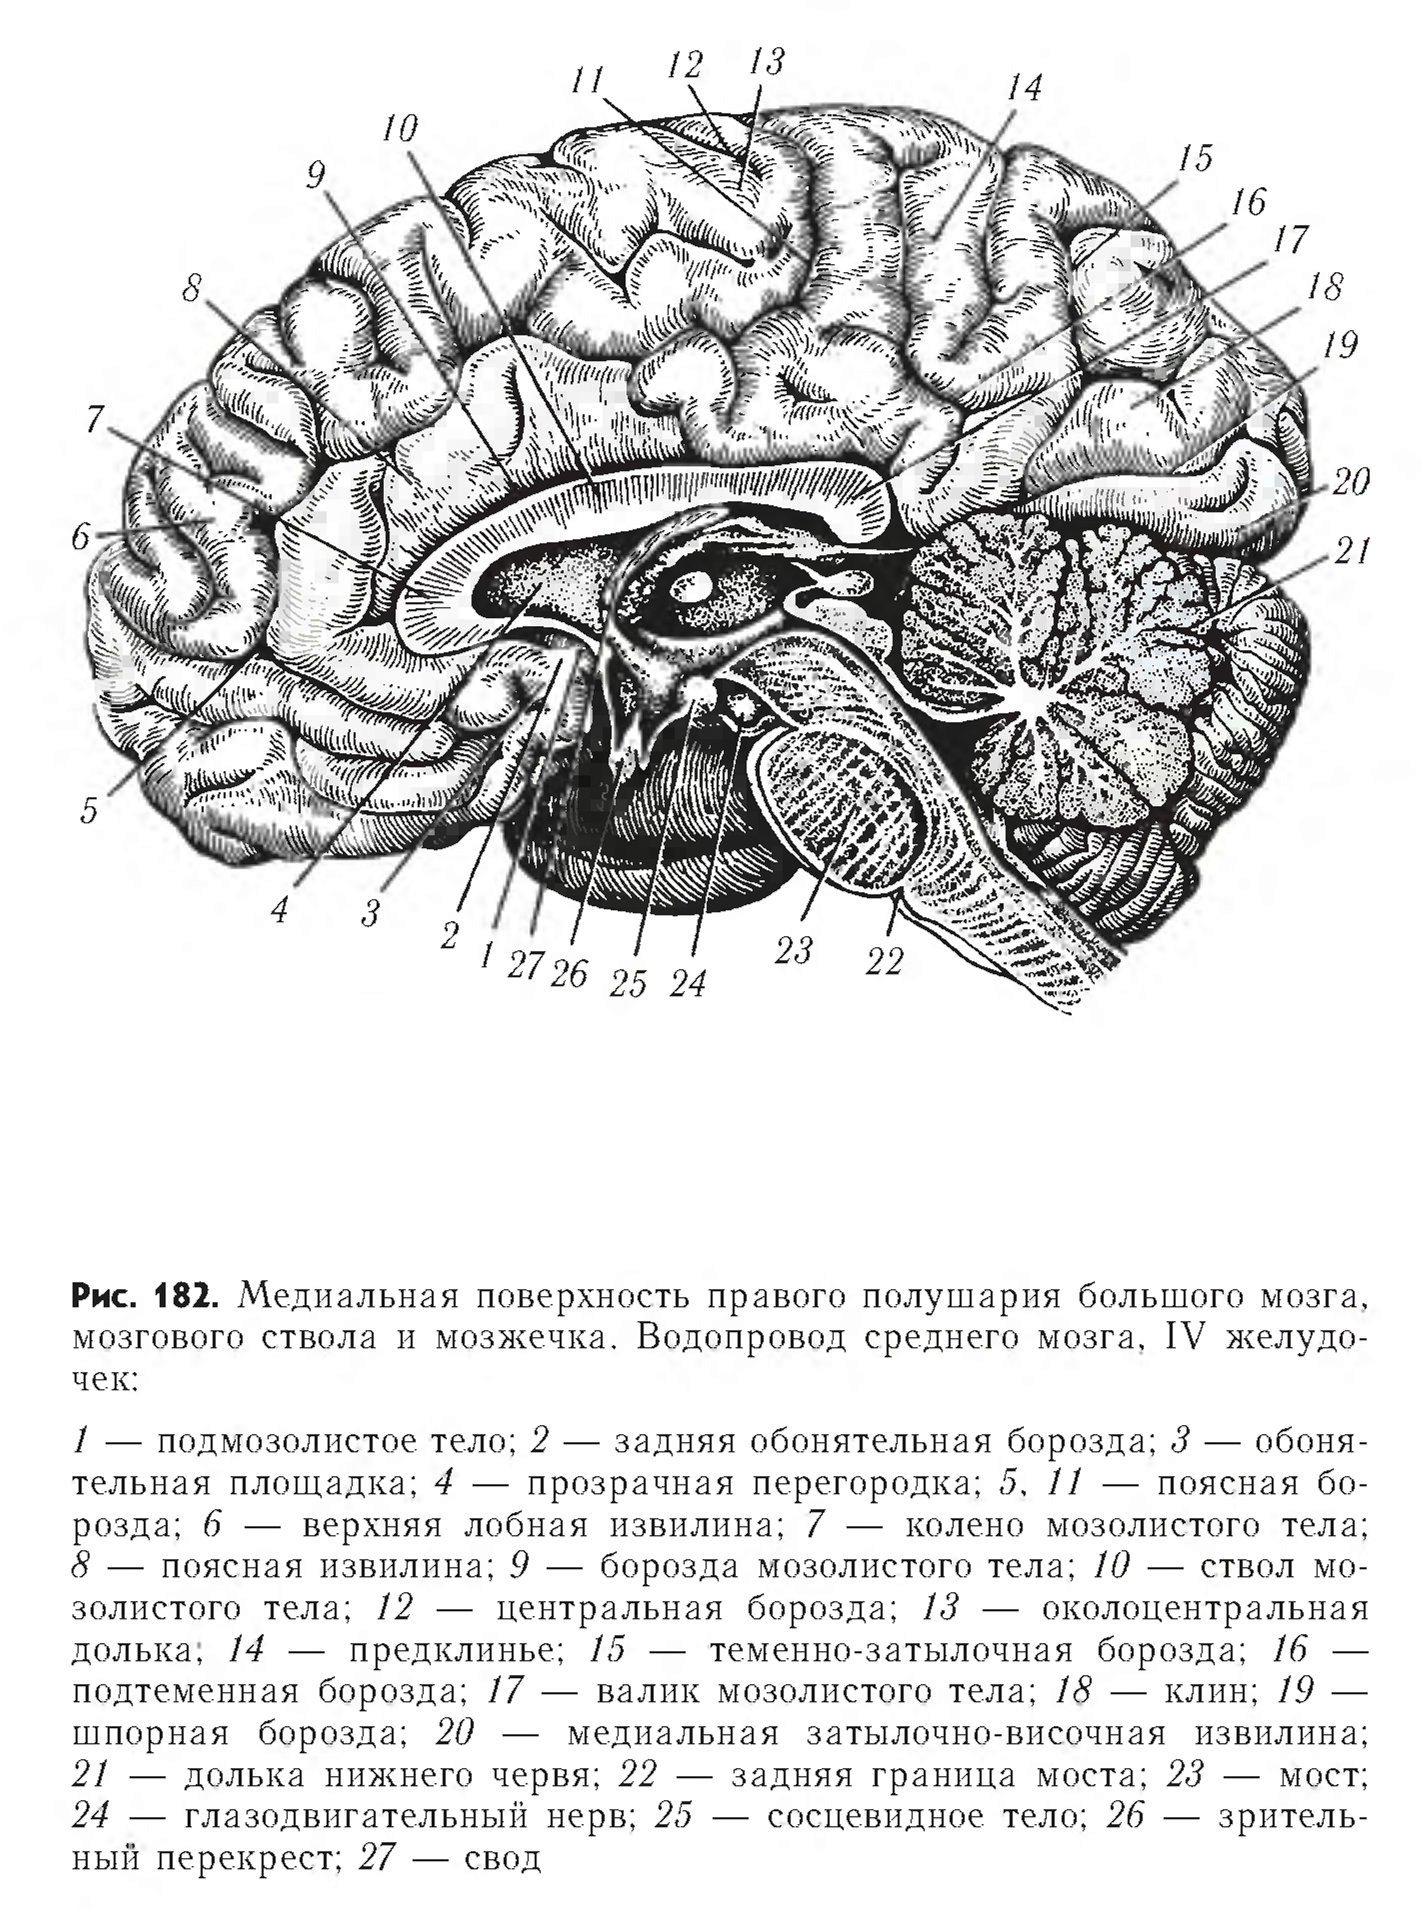 Медиальная поверхность мозга